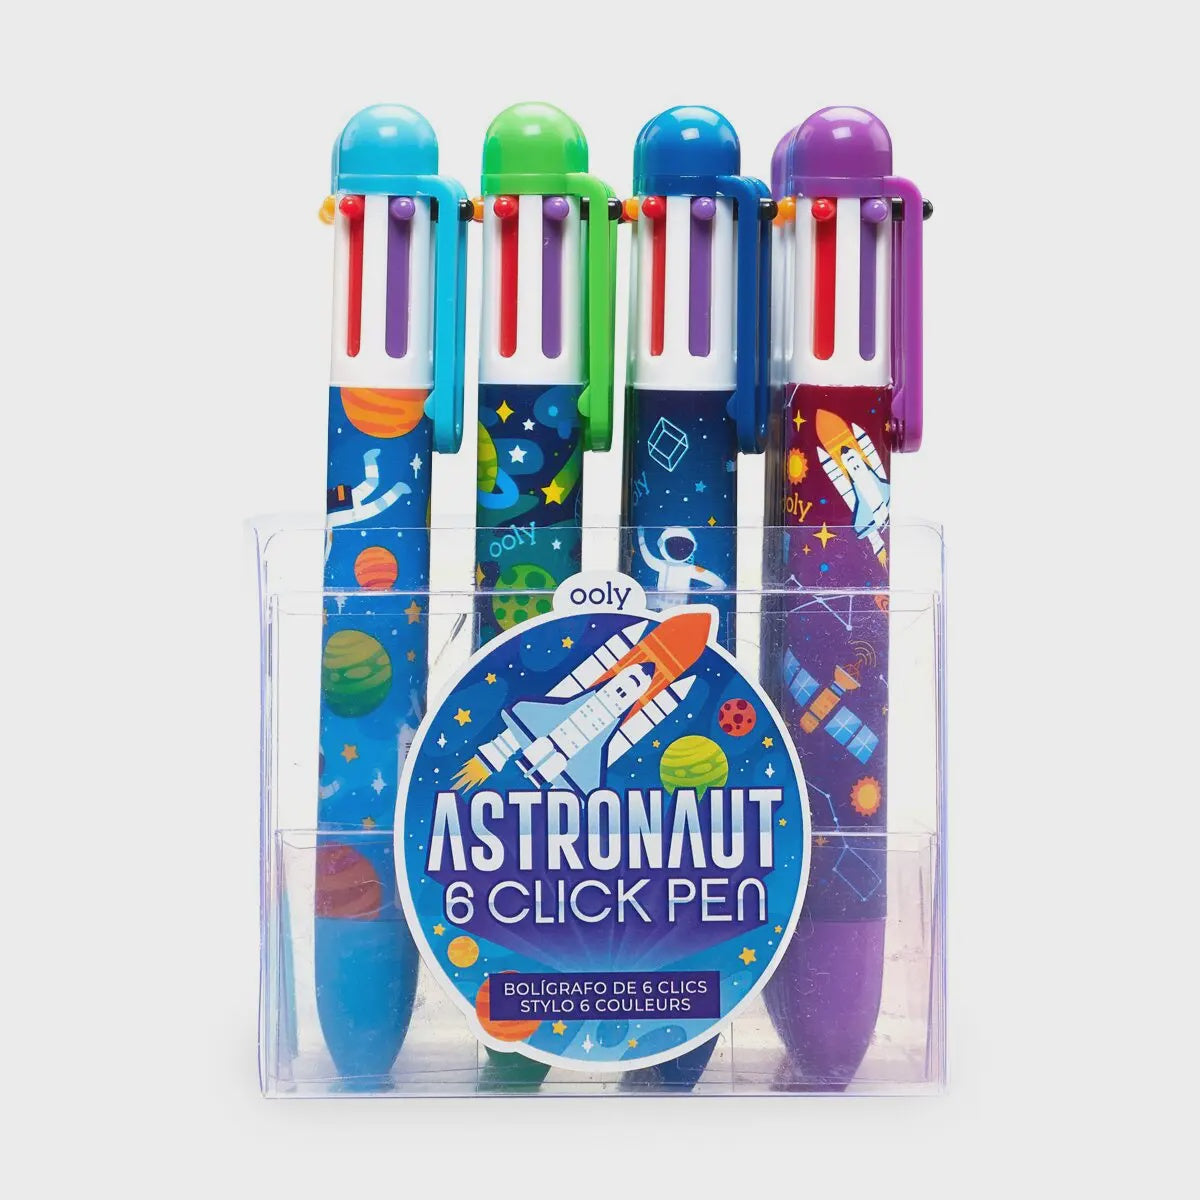 6 Click Pen- Astronauts